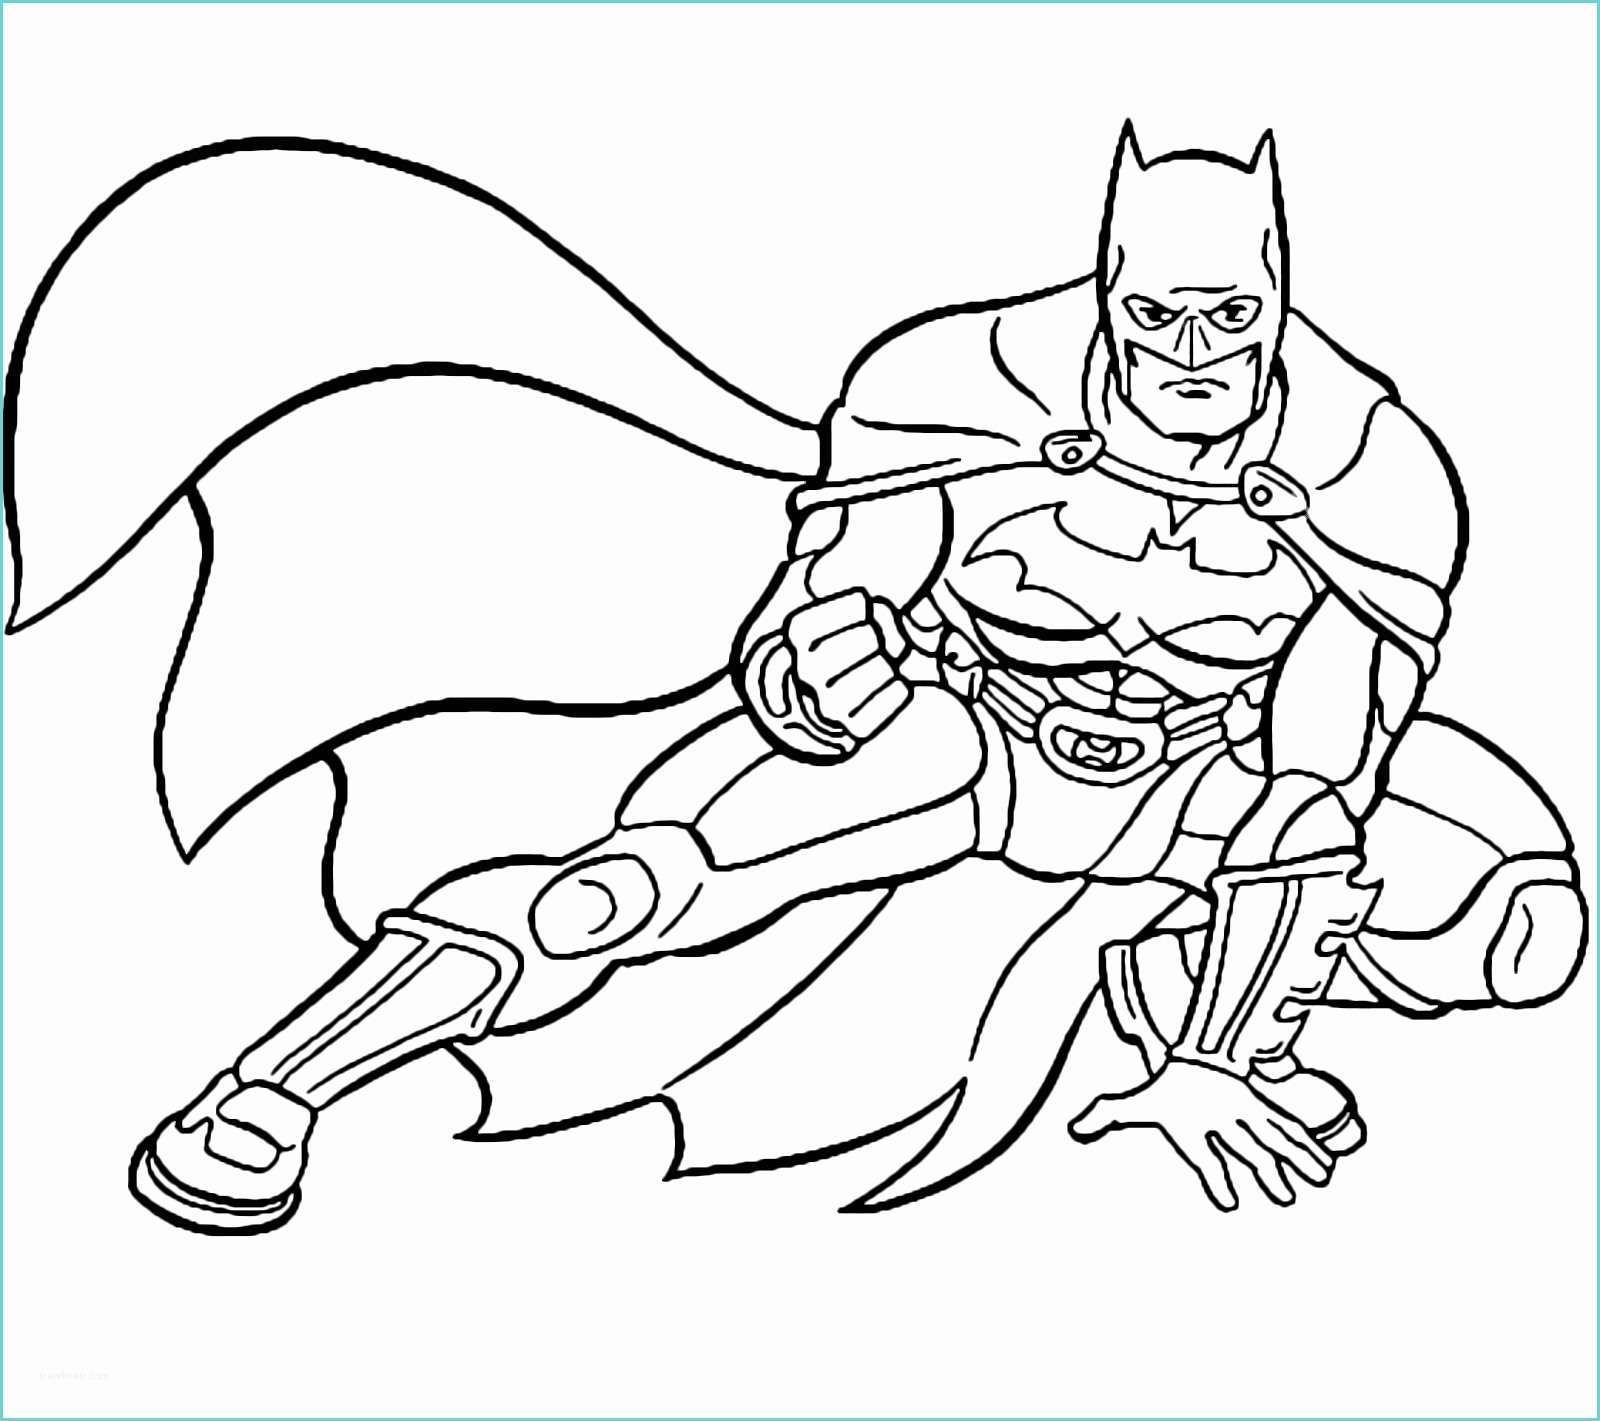 Immagini Di Batman Da Colorare Batman In Guardia Disegni Da Colorare Disegni Da